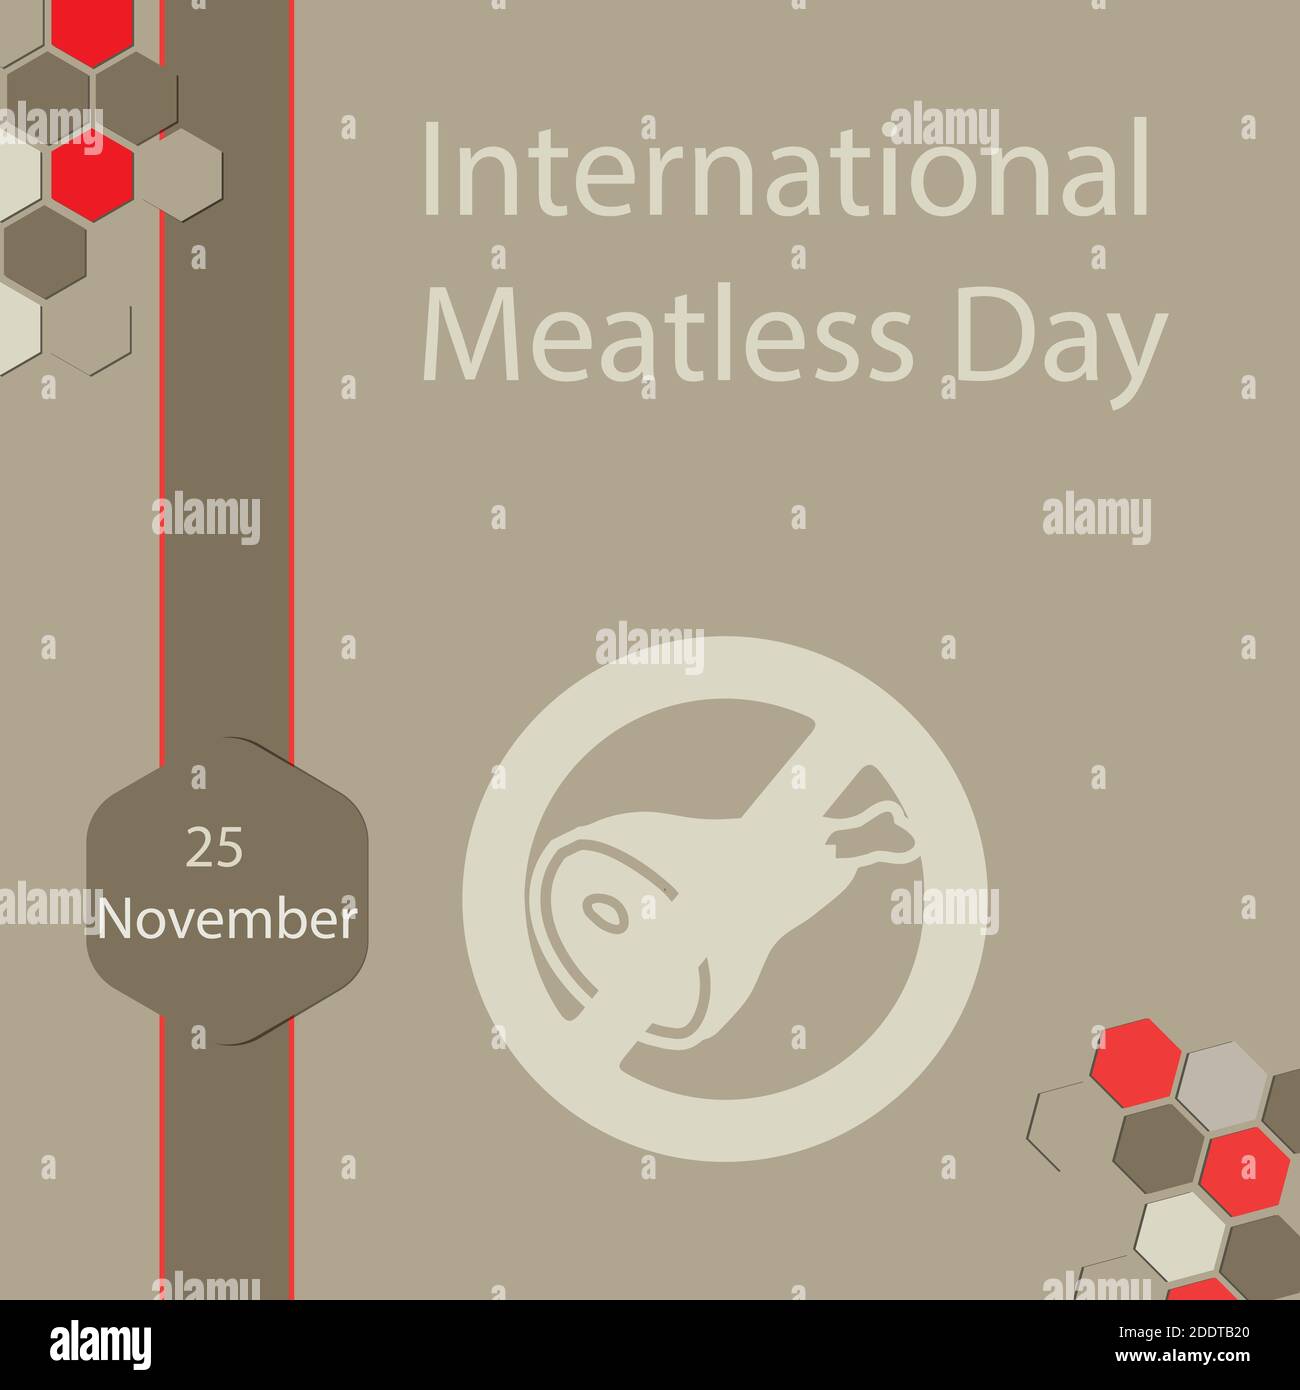 Der Internationale Fleischlose Tag, auch "Internationaler Vegetariertag" genannt, ist am 25. November. Stock Vektor